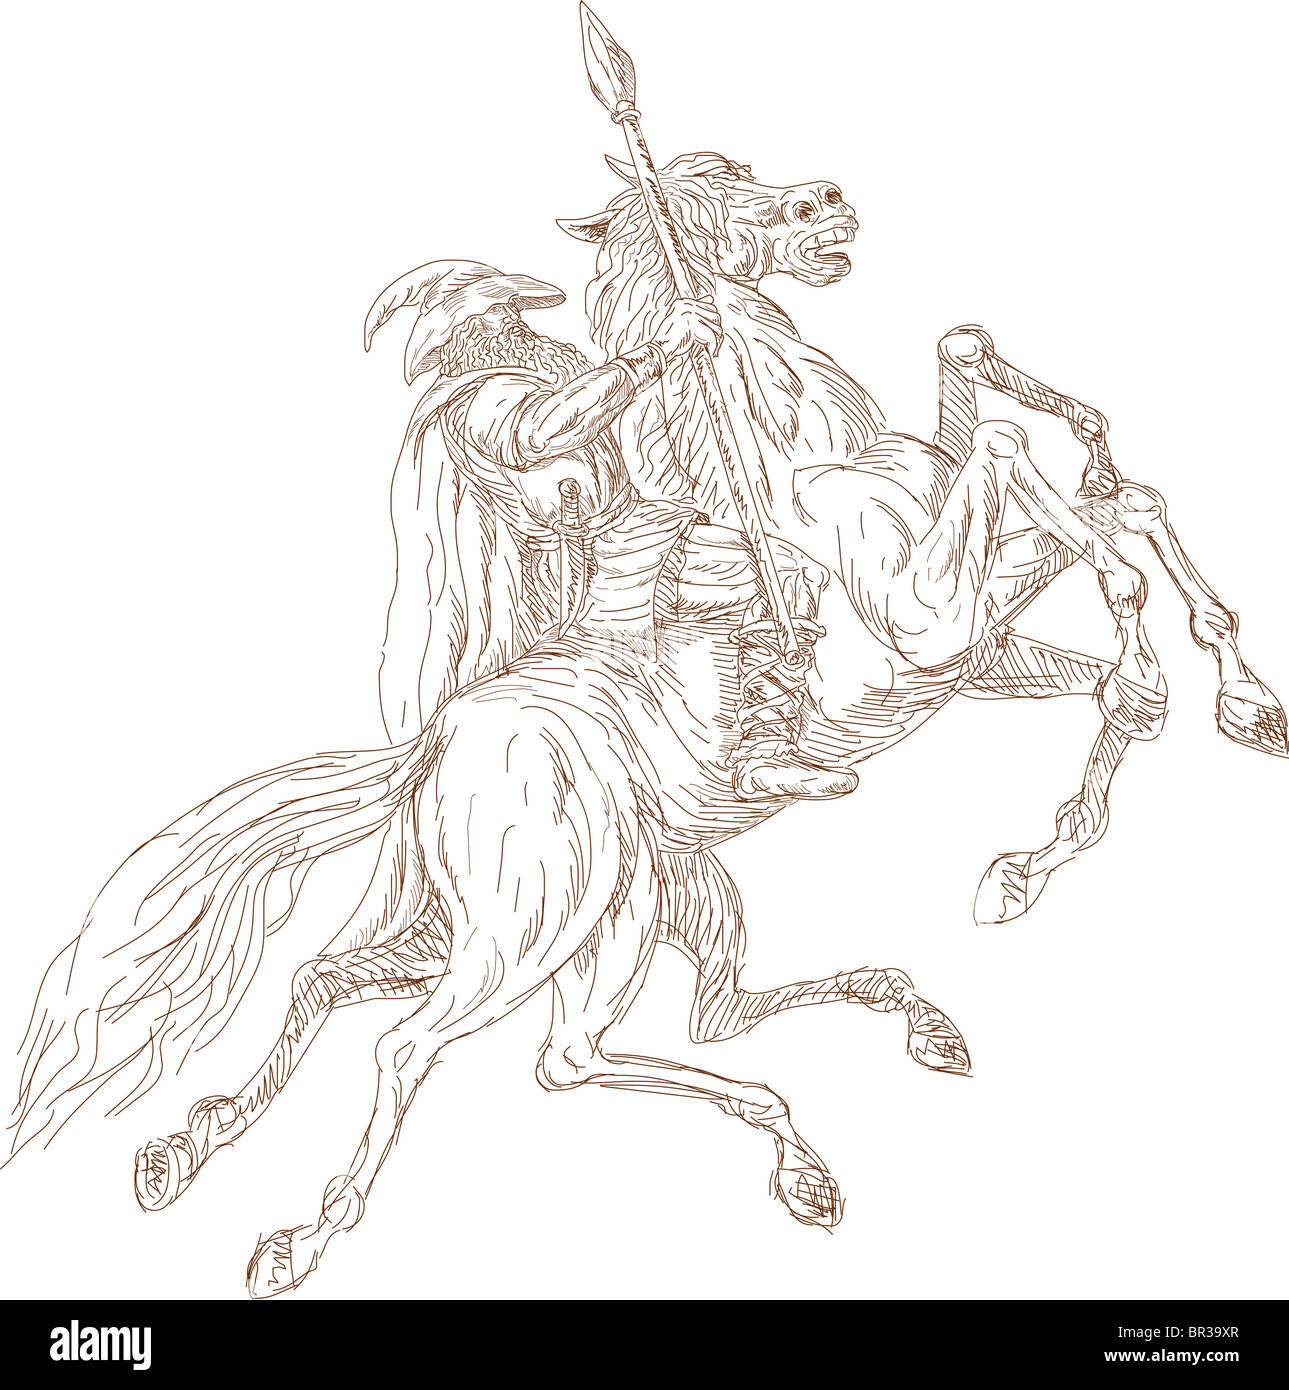 Illustration du dieu scandinave Odin riding horse, huit pattes Sleipner en chasse sauvage. Dessiné à la main et dessiné. Banque D'Images